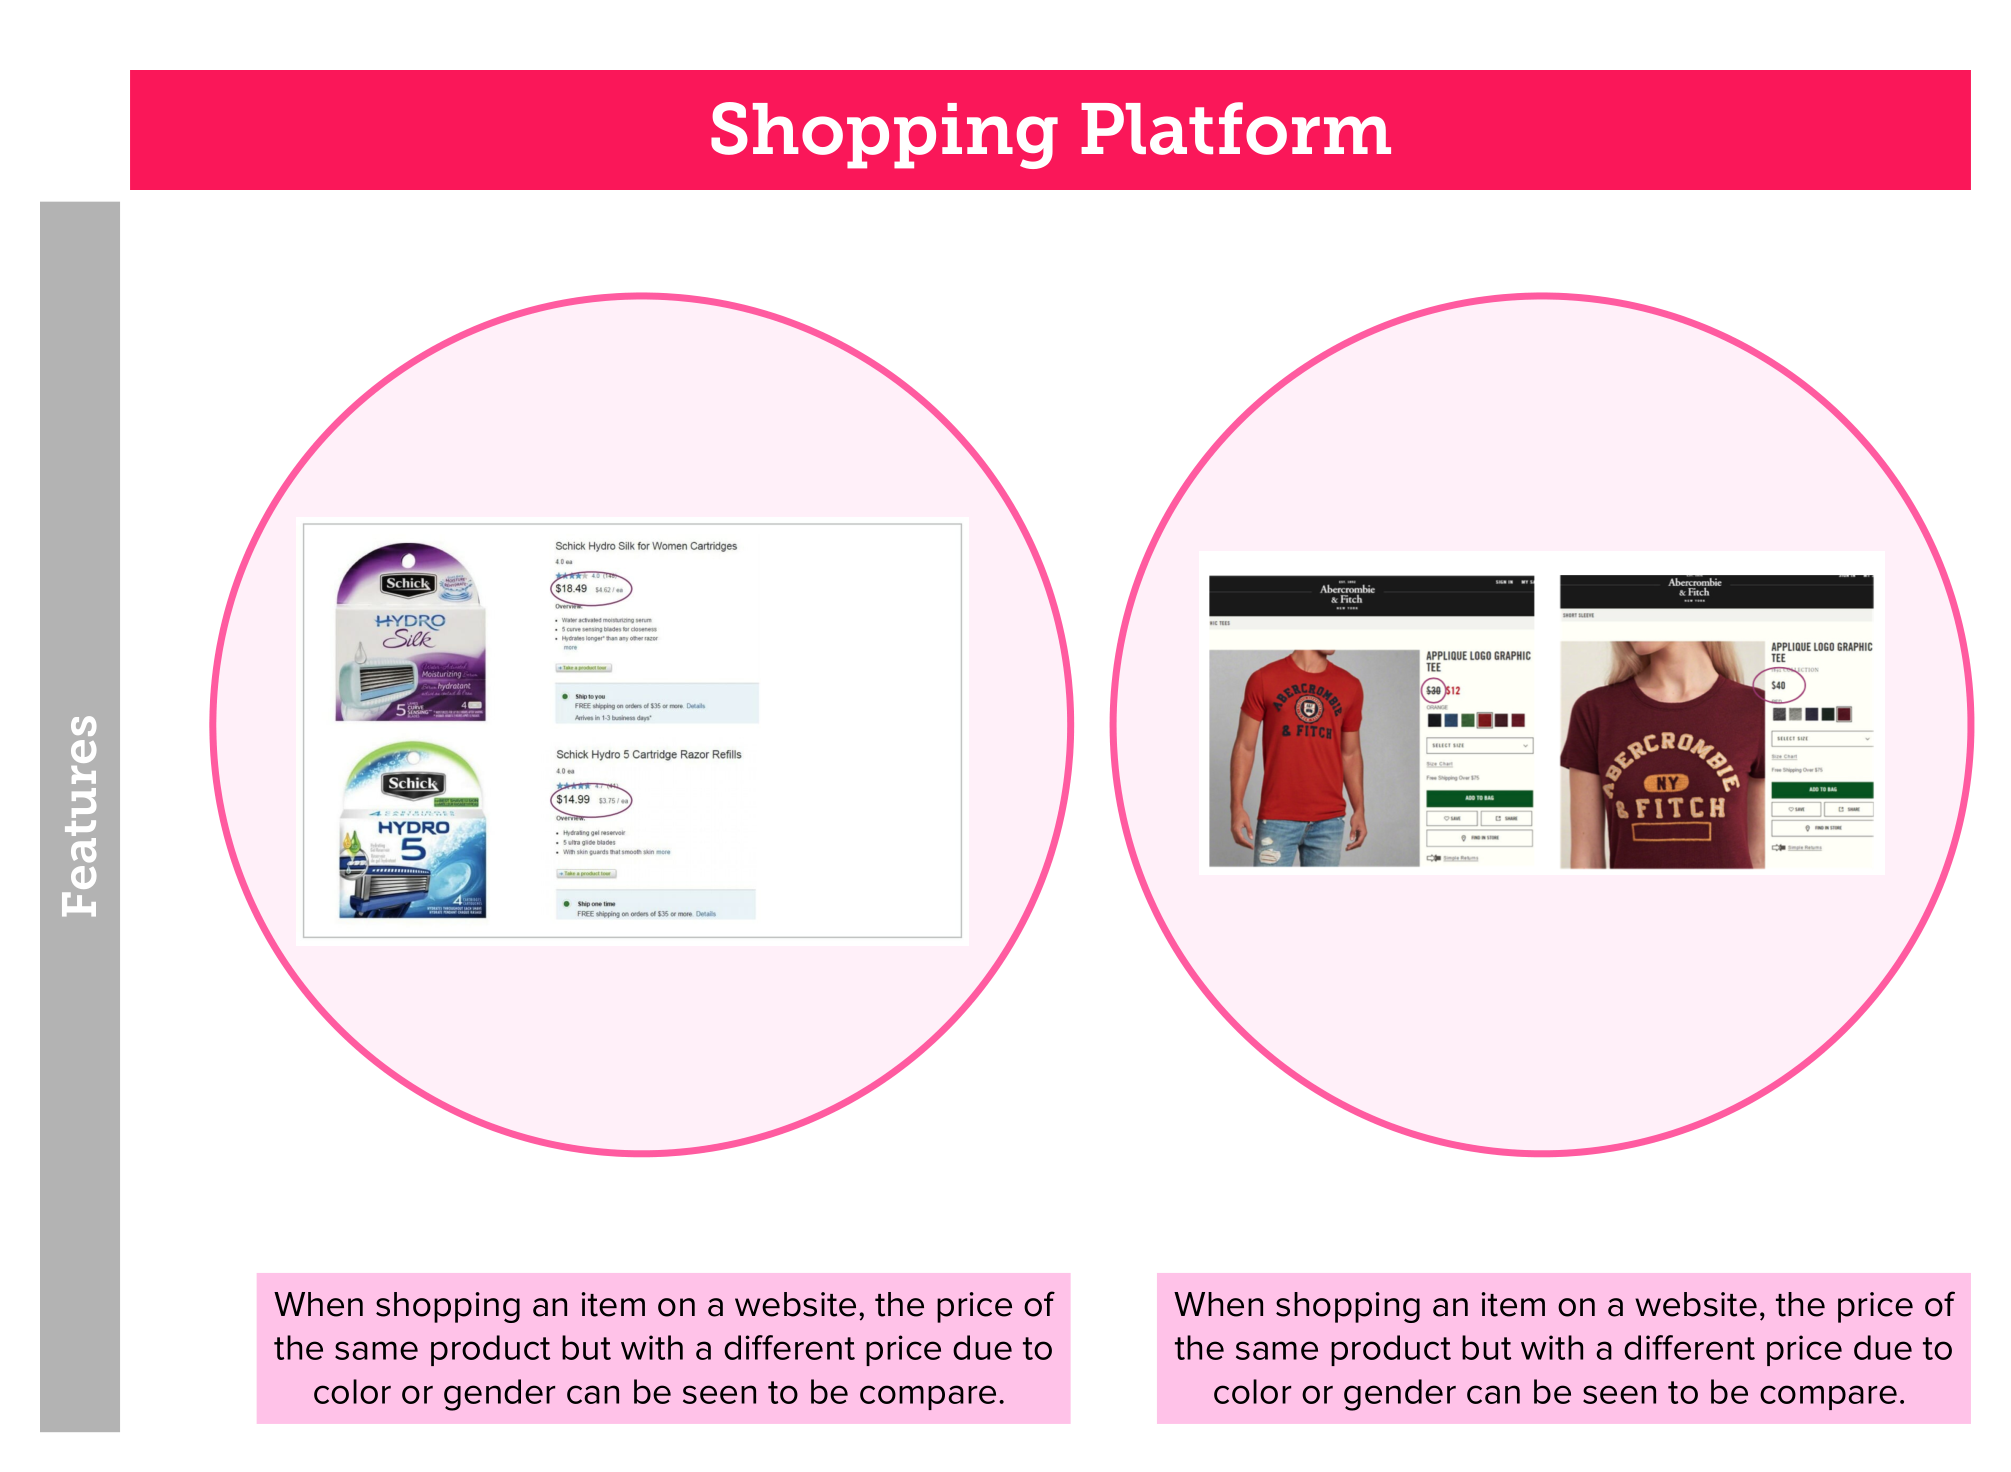 shopping platform image